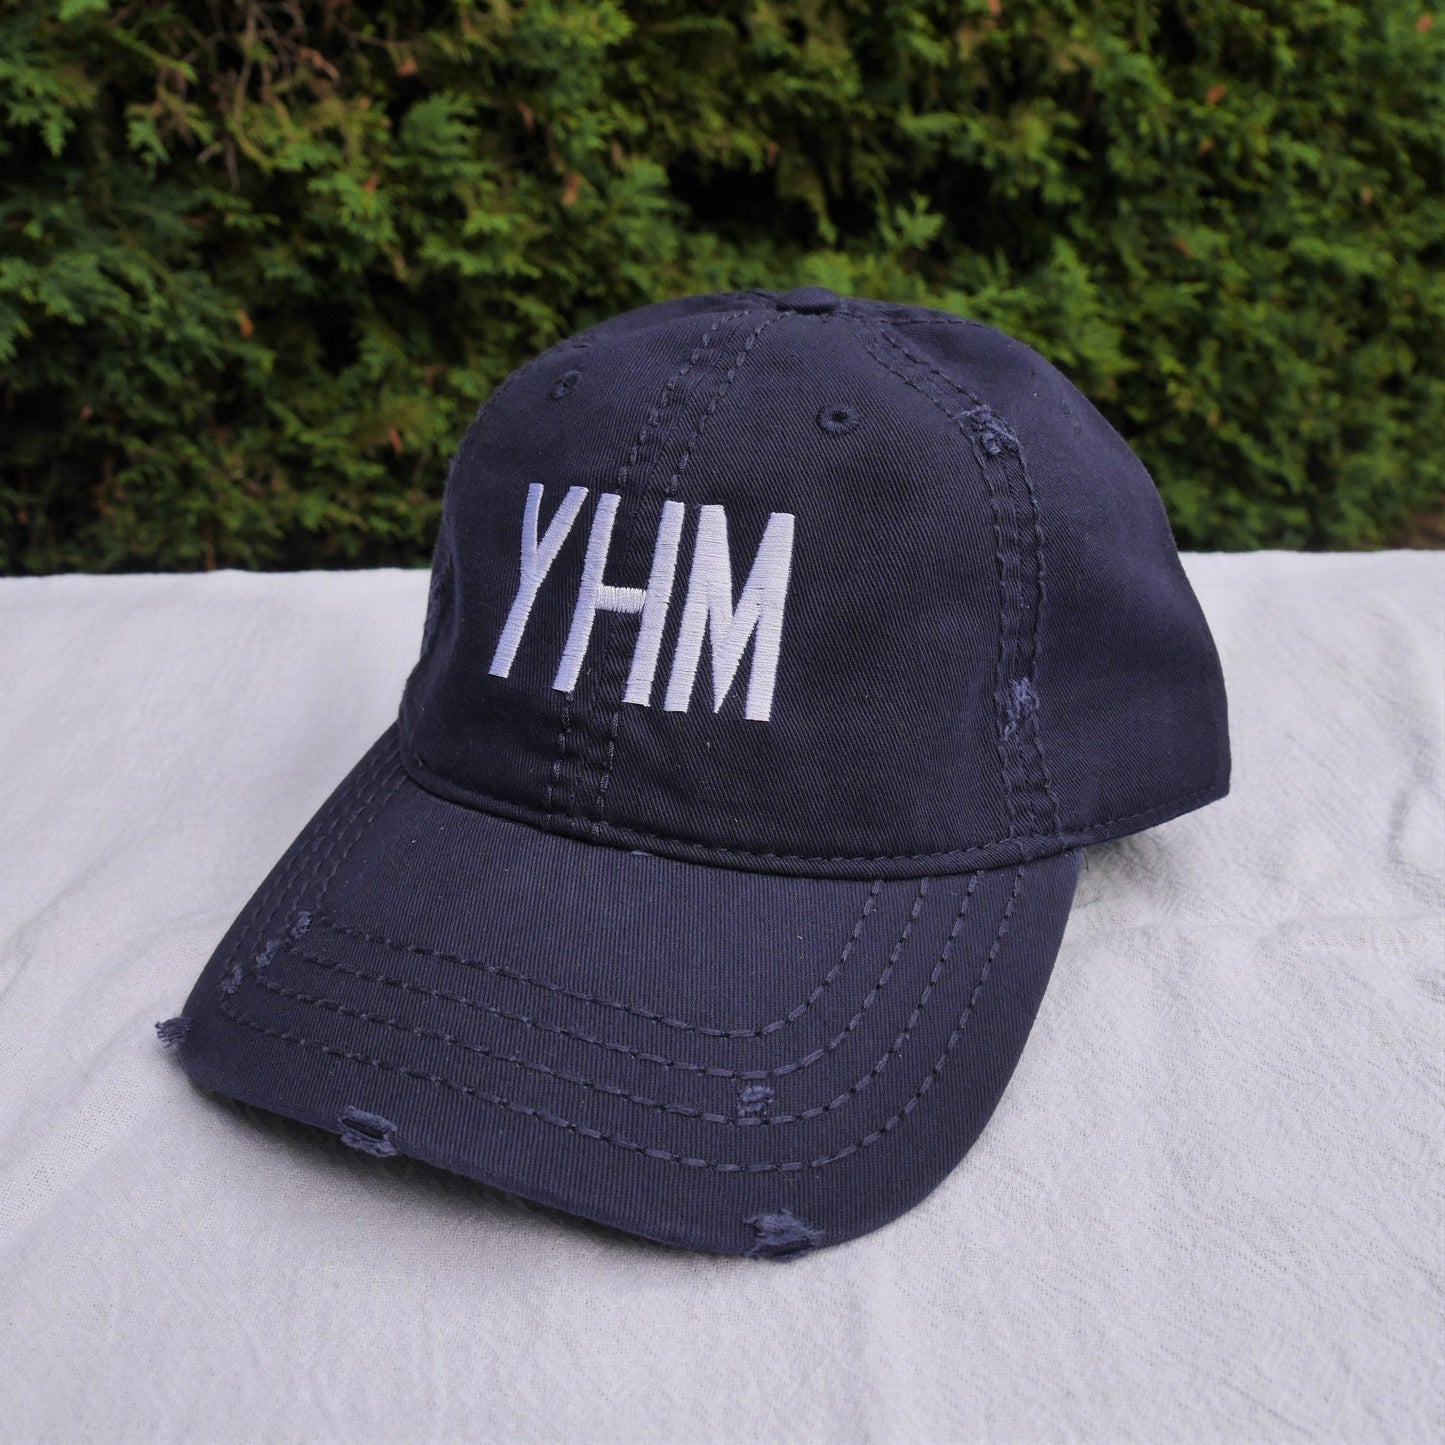 Airport Code Kid's Baseball Cap - White • YSB Sudbury • YHM Designs - Image 37